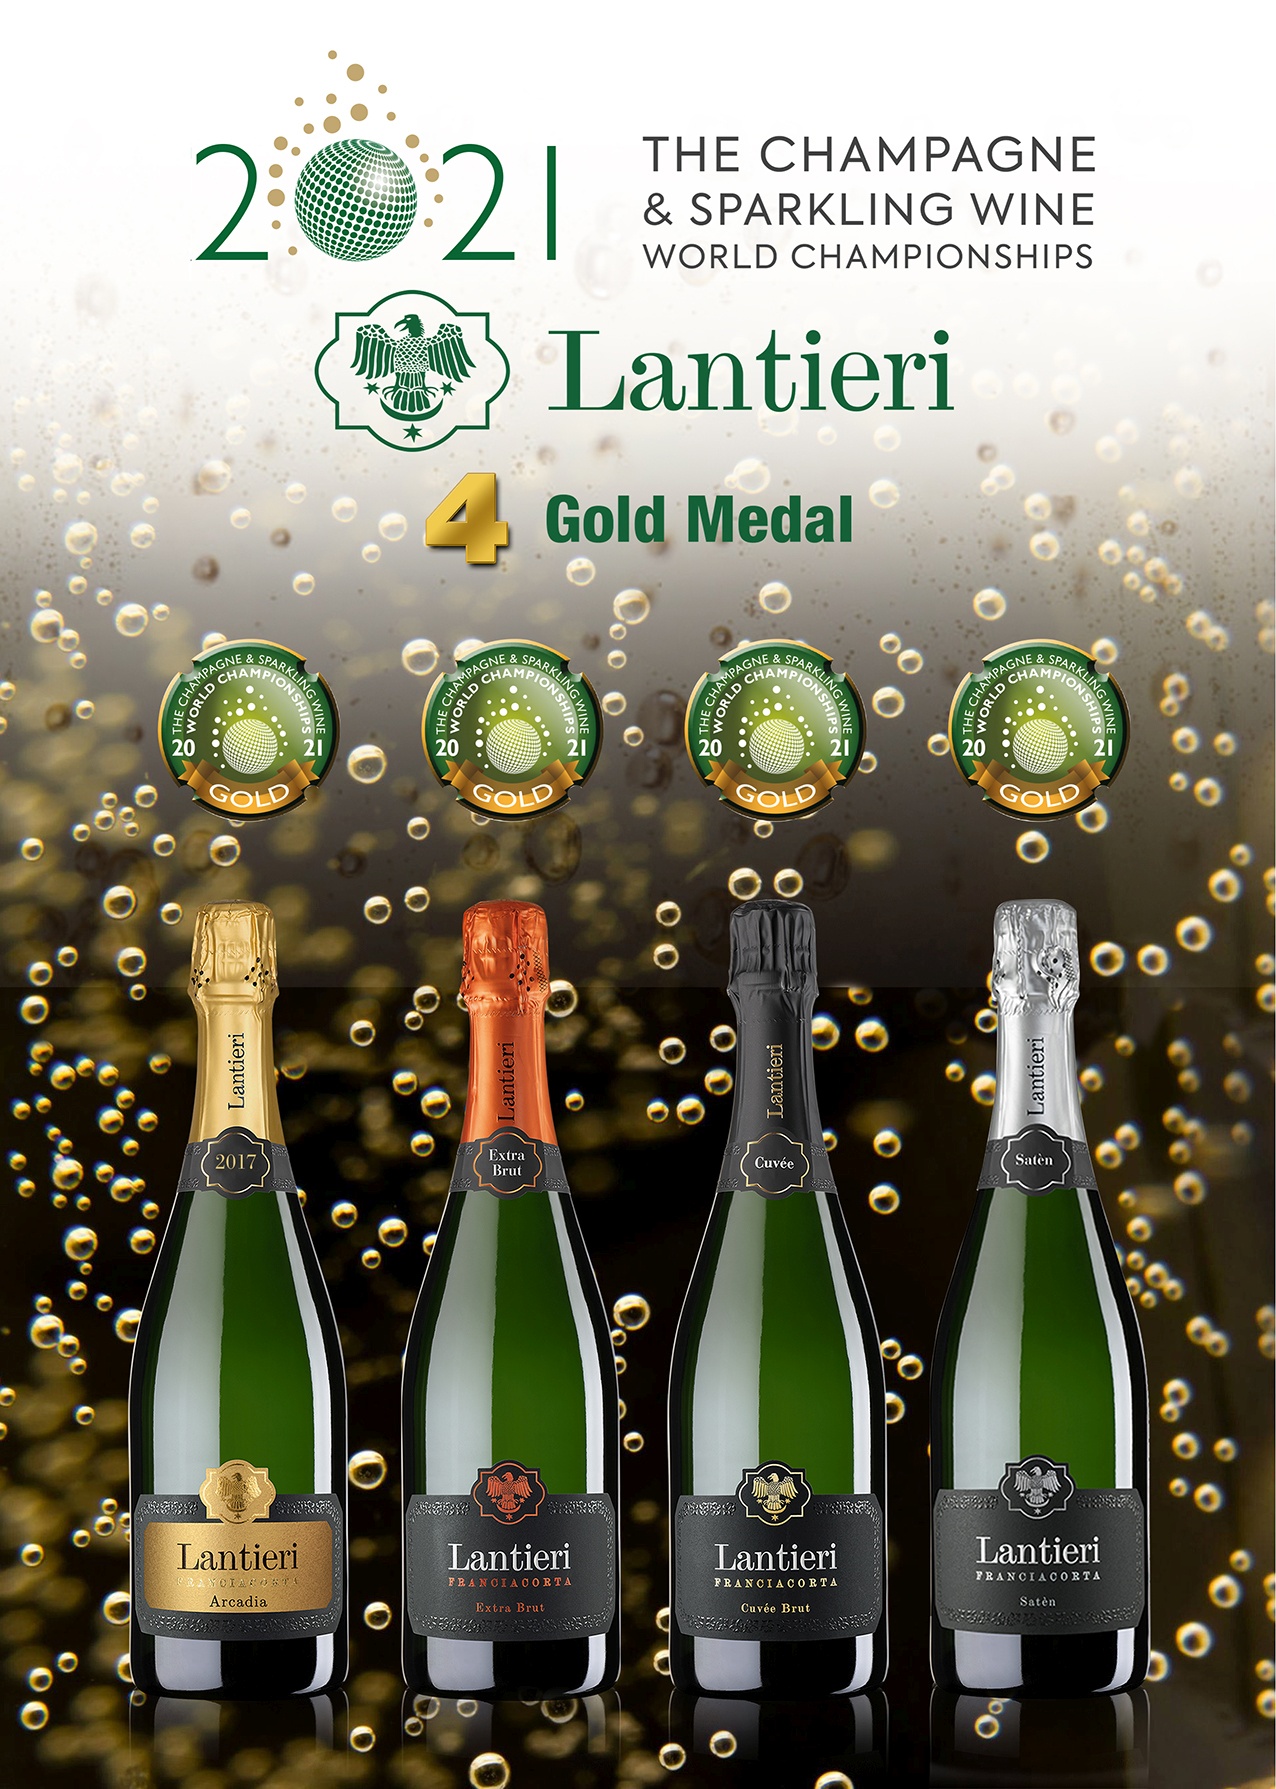 Quattro Medaglie d’oro per Lantieri al prestigioso The Champagne & Sparkling Wine World Championship 2021